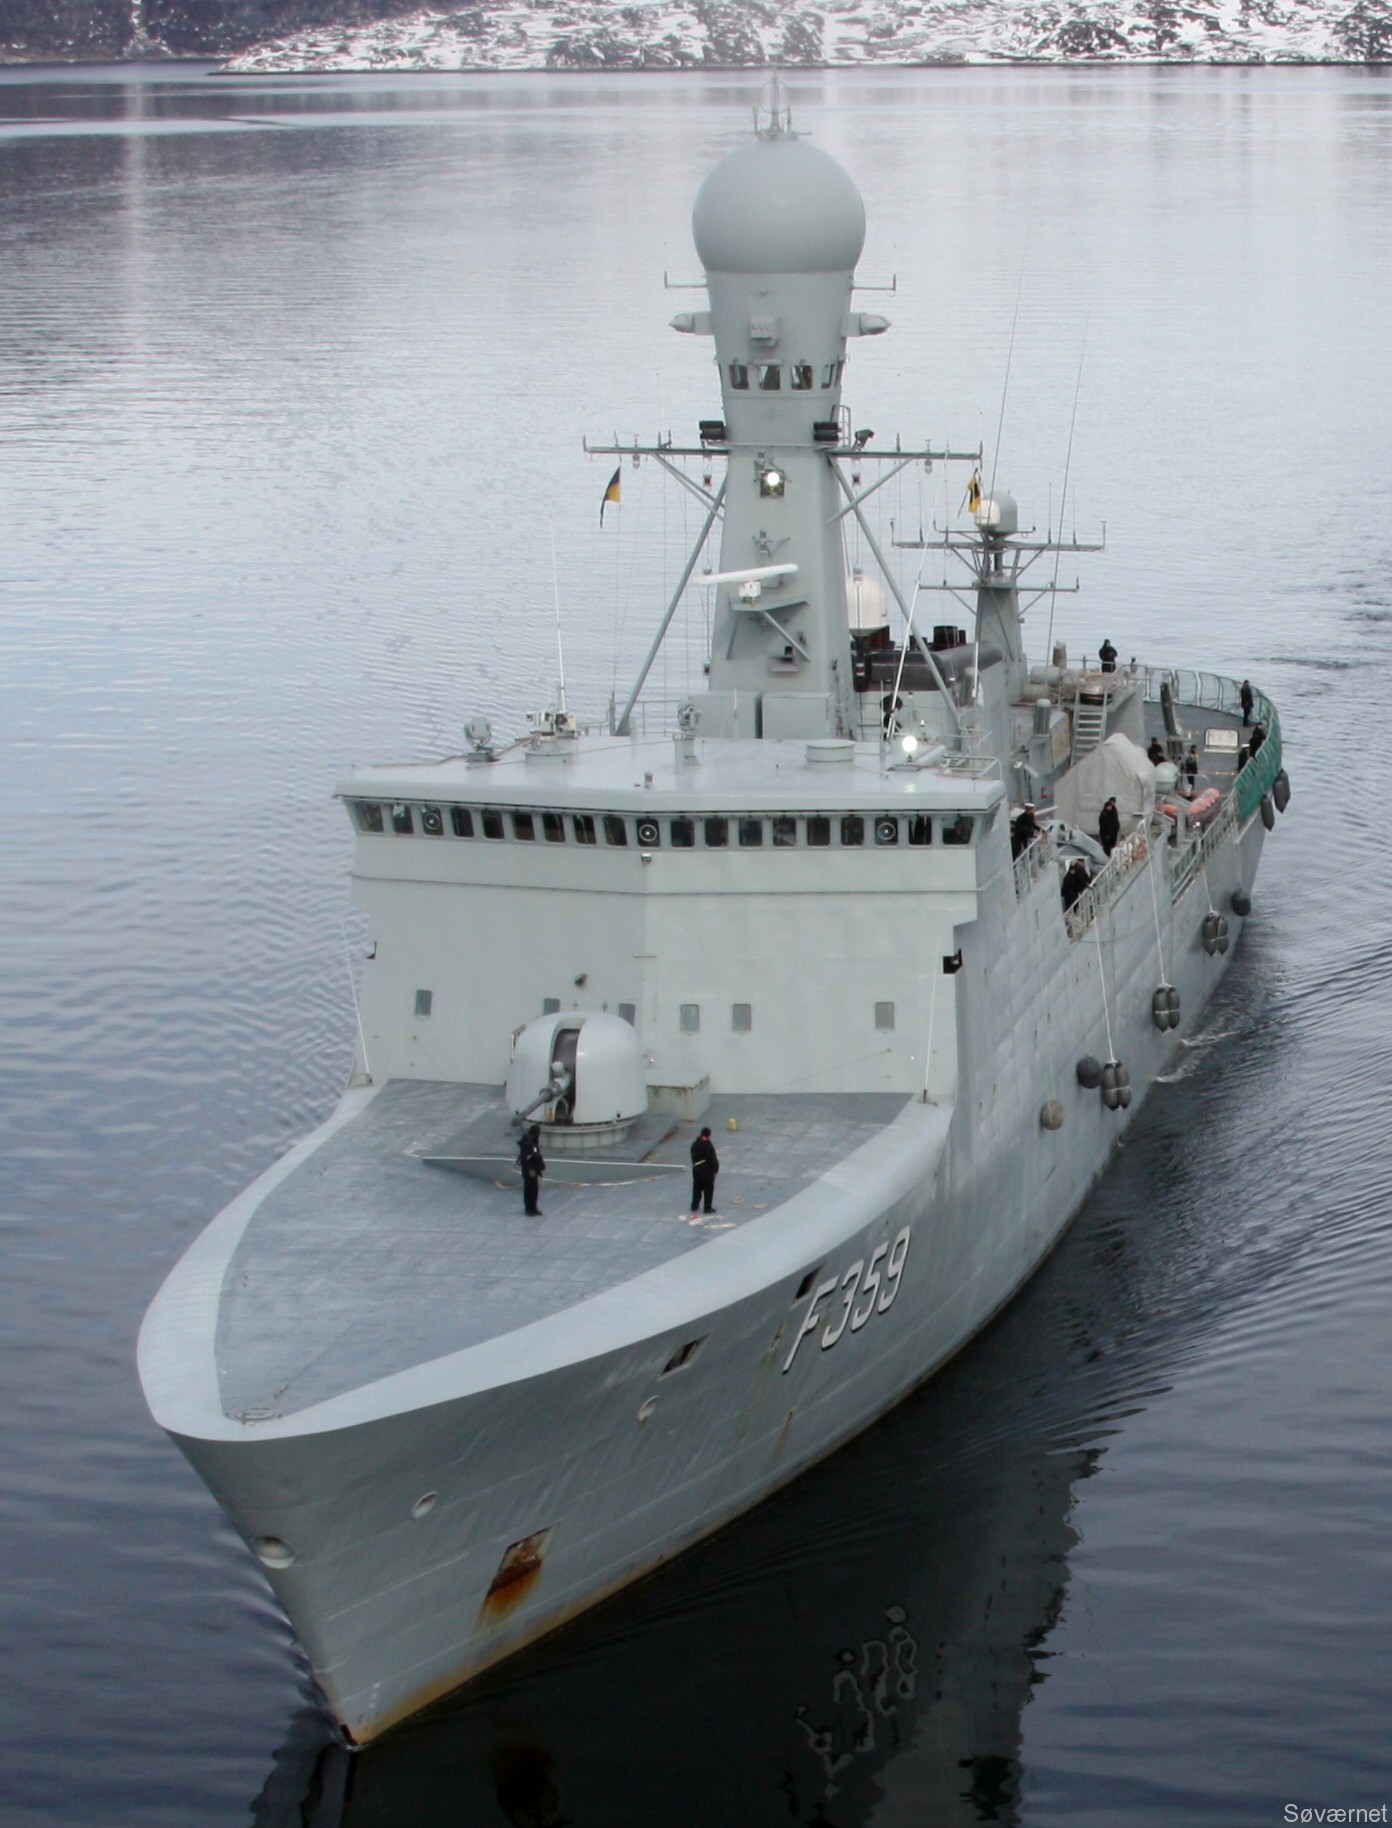 f-359 hdms vaedderen thetis class ocean patrol frigate royal danish navy kongelige danske marine kdm inspektionsskibet 23